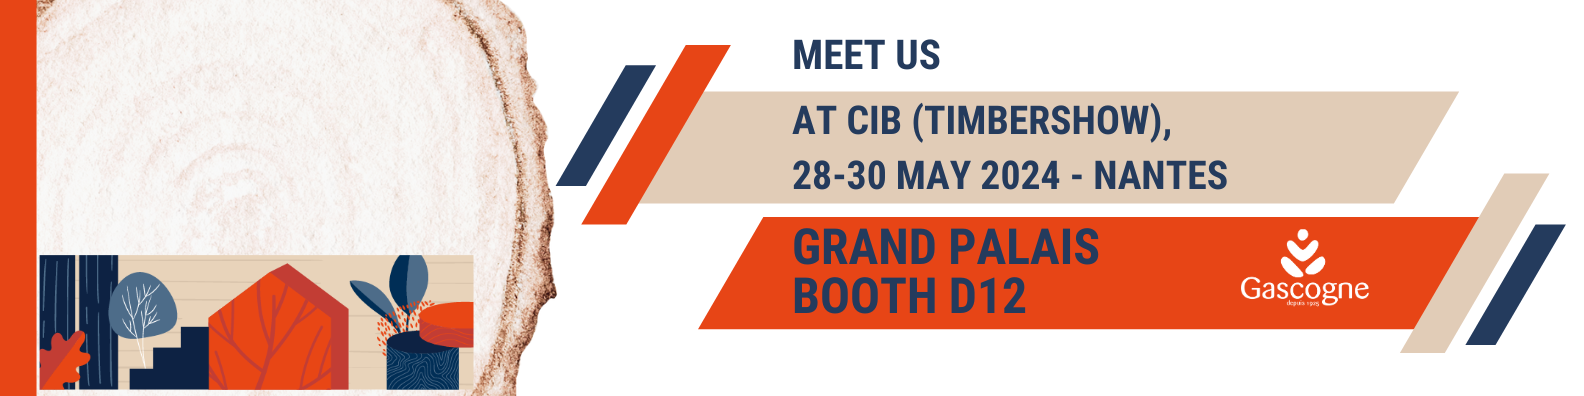 CIB 28-30 May 2024 Grand Palais Booth D12